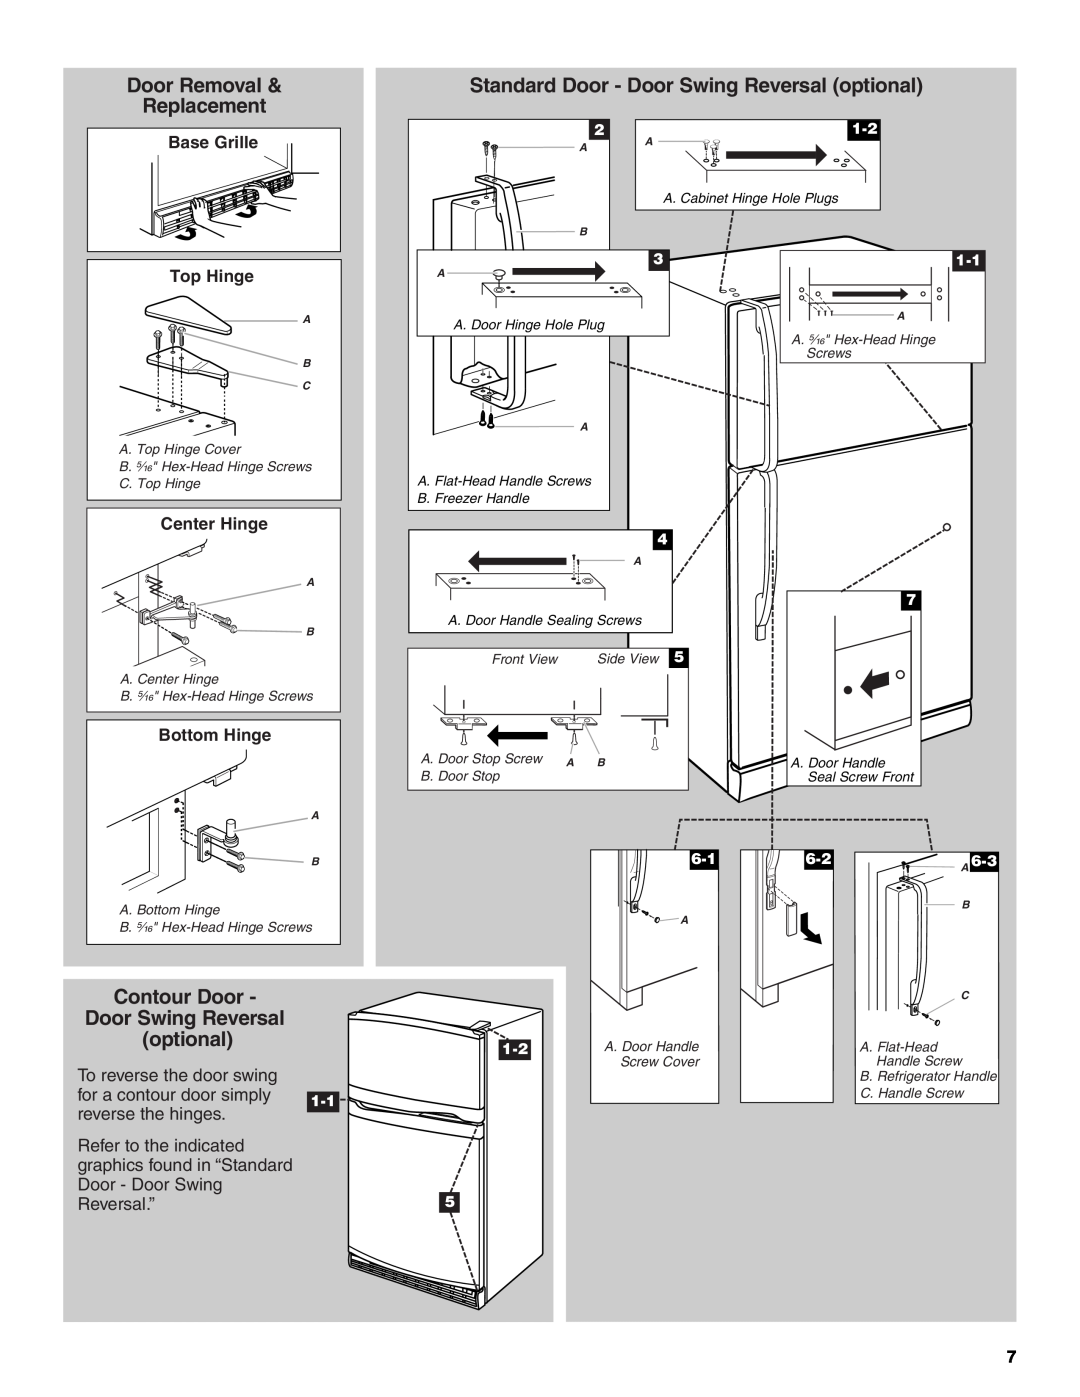 Whirlpool GR2FHMXV Door Removal, Standard Door - Door Swing Reversal optional, Replacement, Contour Door, Reversal.”5 